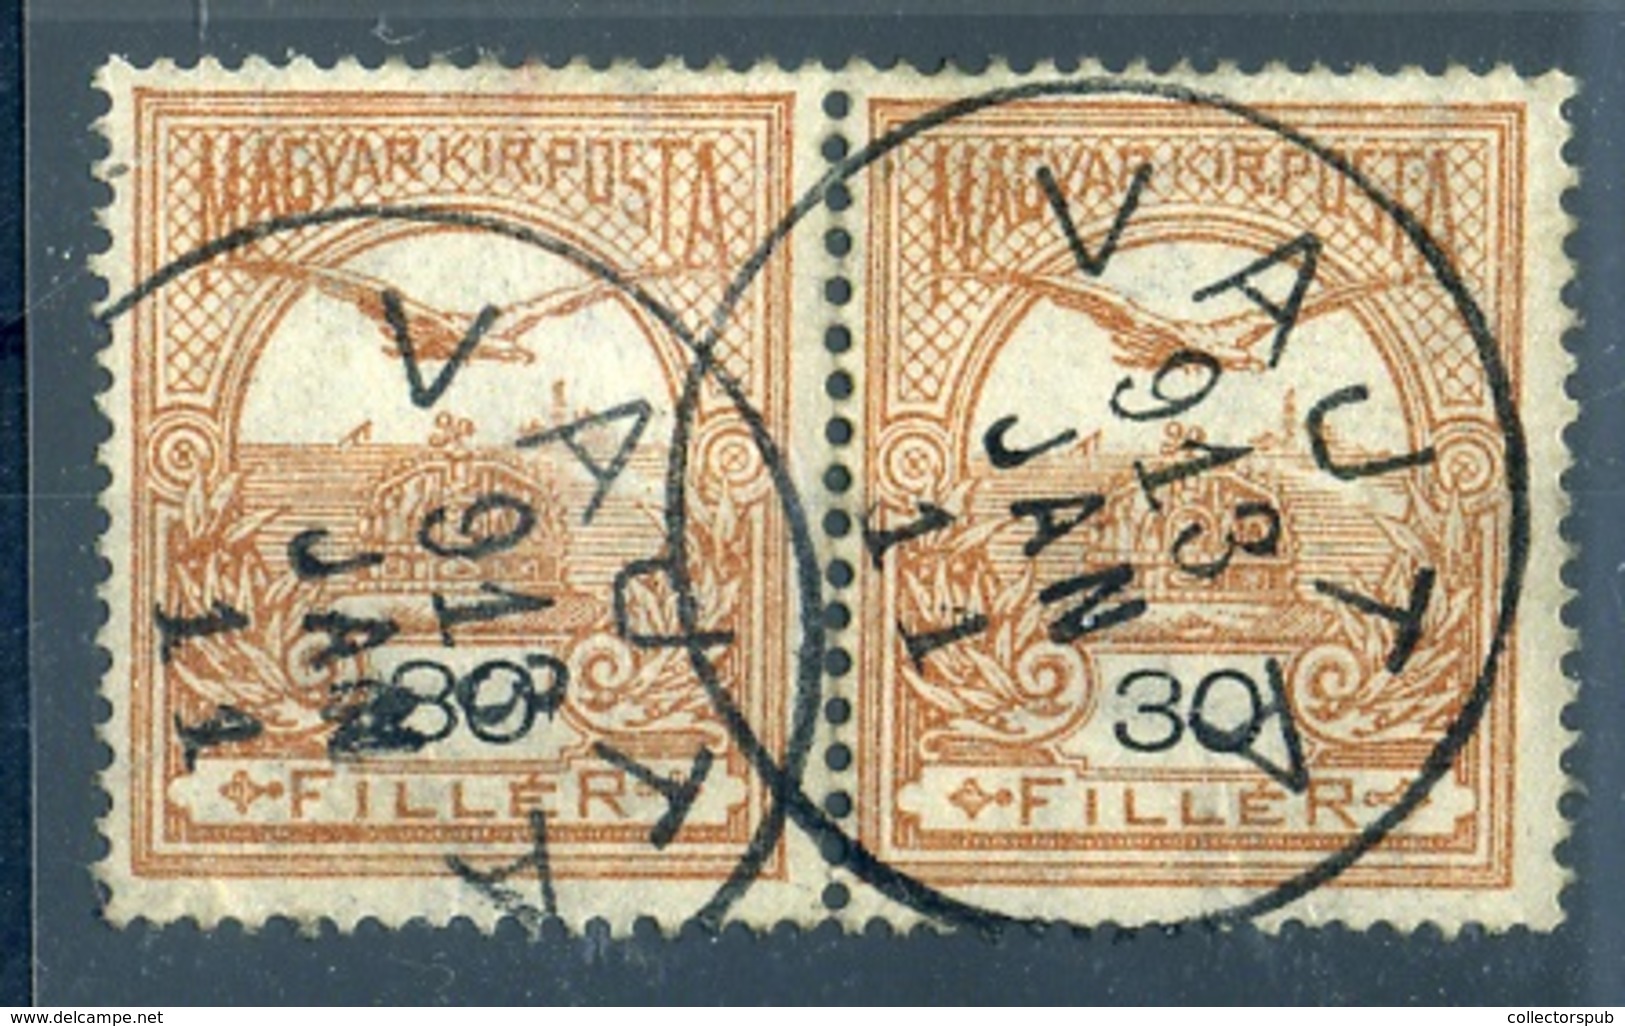 VAJTA  Szép Egykörös Bélyegzés - Used Stamps